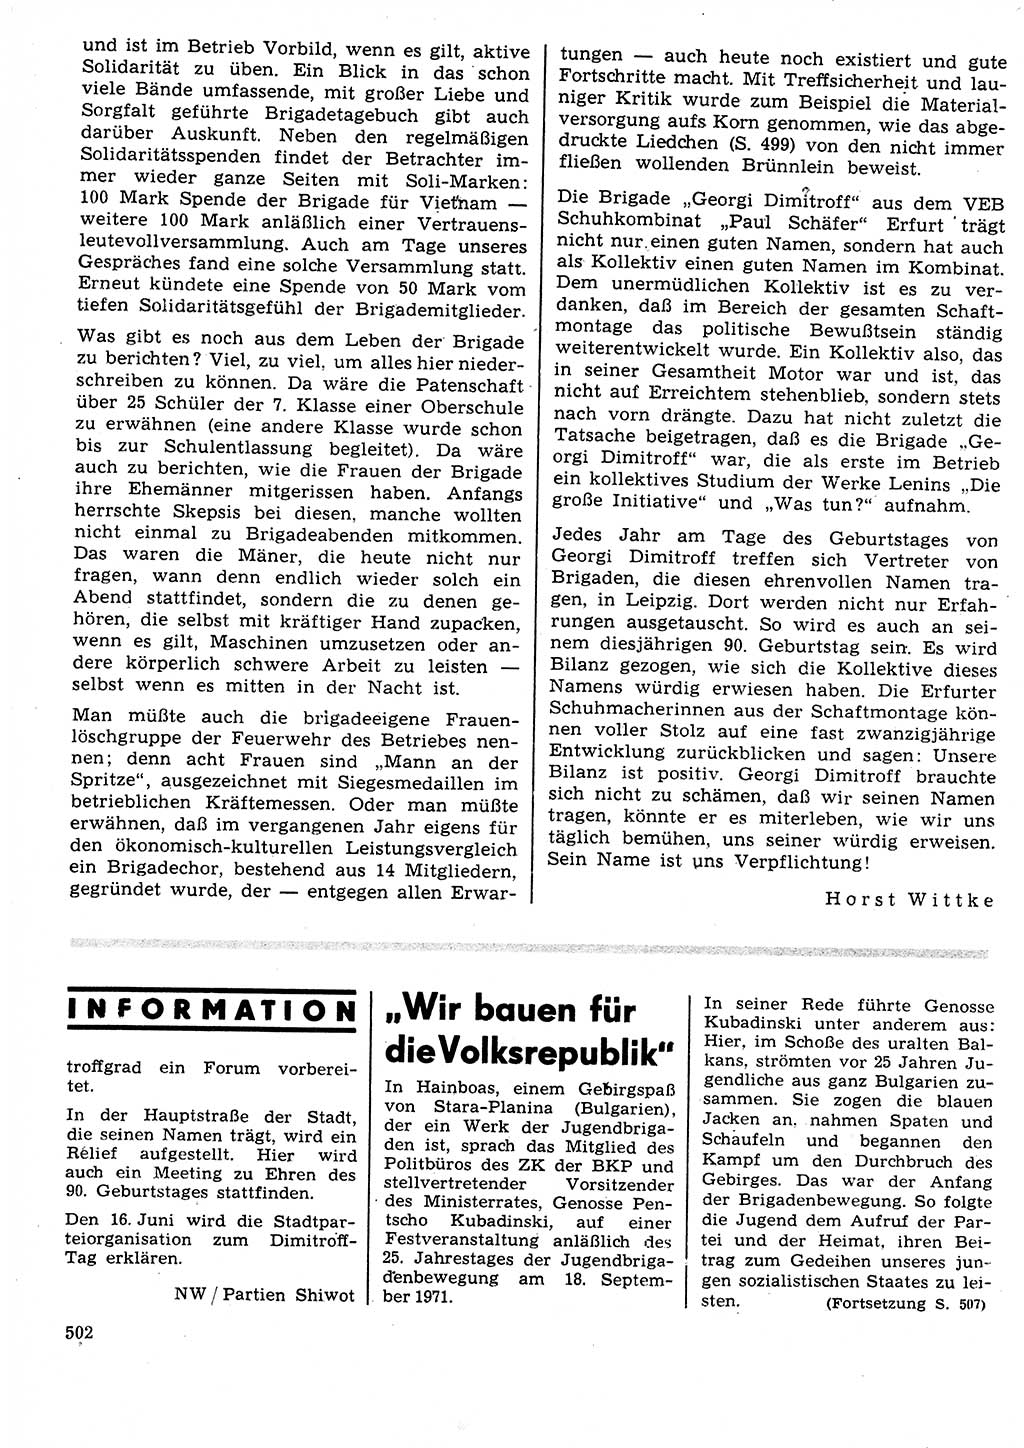 Neuer Weg (NW), Organ des Zentralkomitees (ZK) der SED (Sozialistische Einheitspartei Deutschlands) für Fragen des Parteilebens, 27. Jahrgang [Deutsche Demokratische Republik (DDR)] 1972, Seite 502 (NW ZK SED DDR 1972, S. 502)